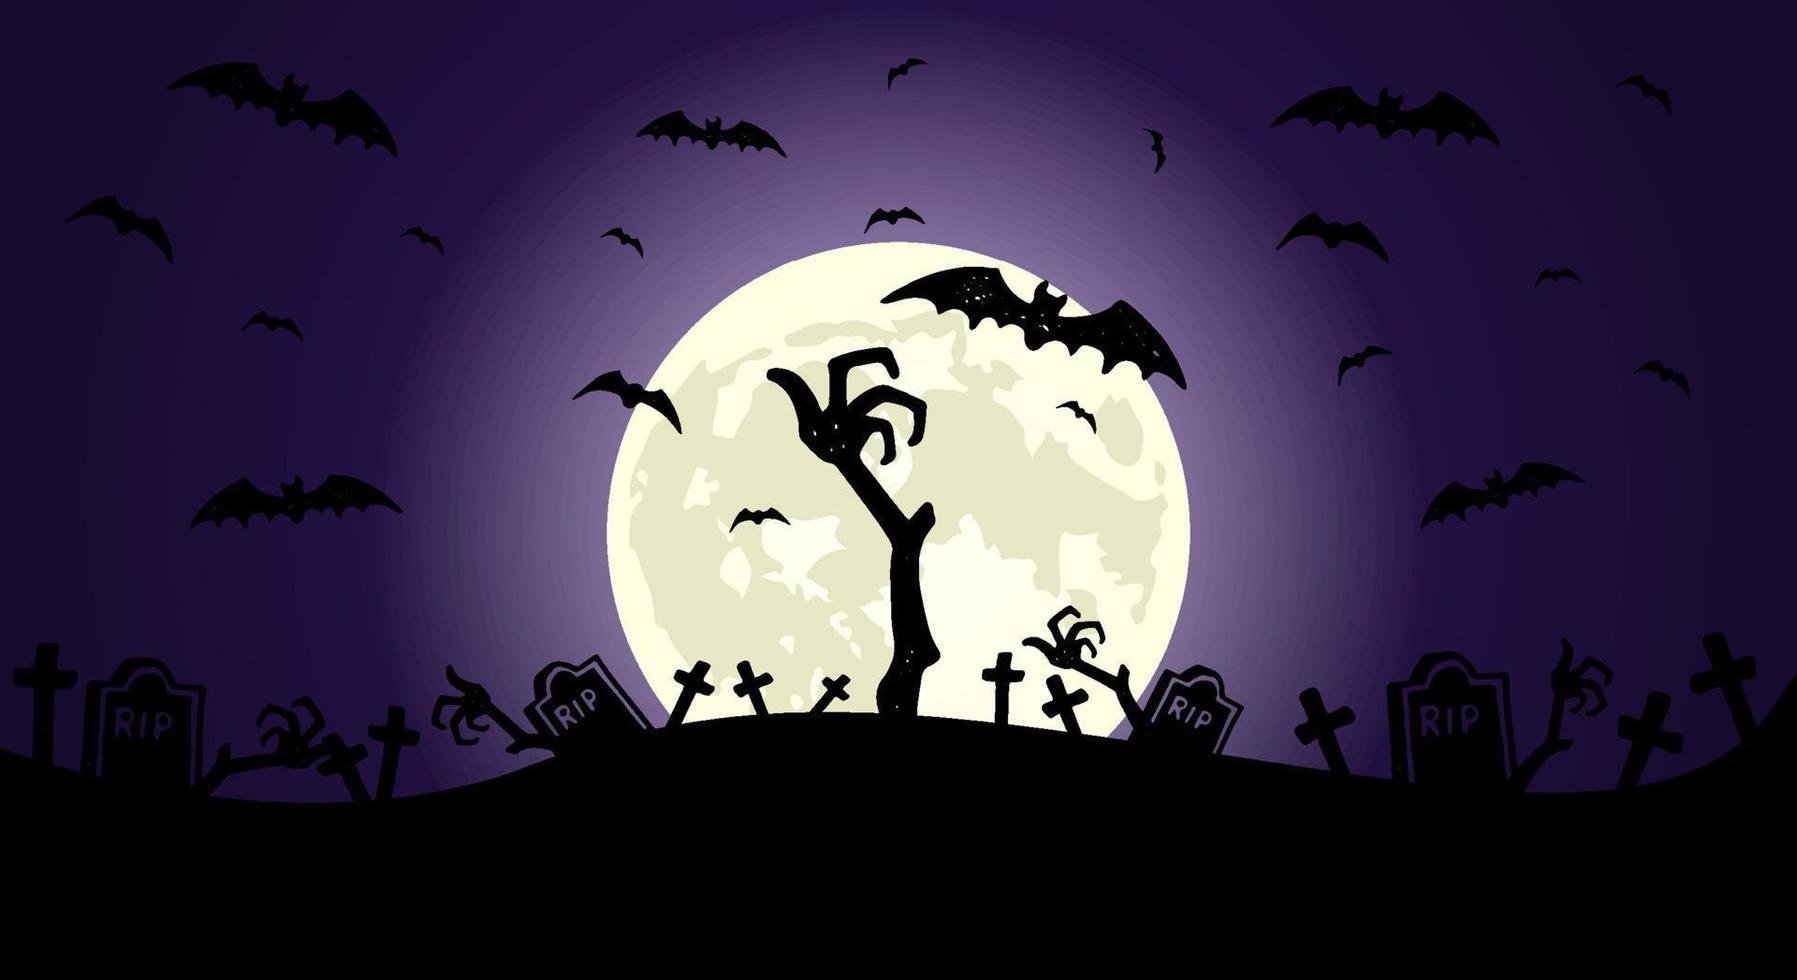 mano zombie frente a la luna llena con elementos ilustrados aterradores para diseños de fondo de halloween vector